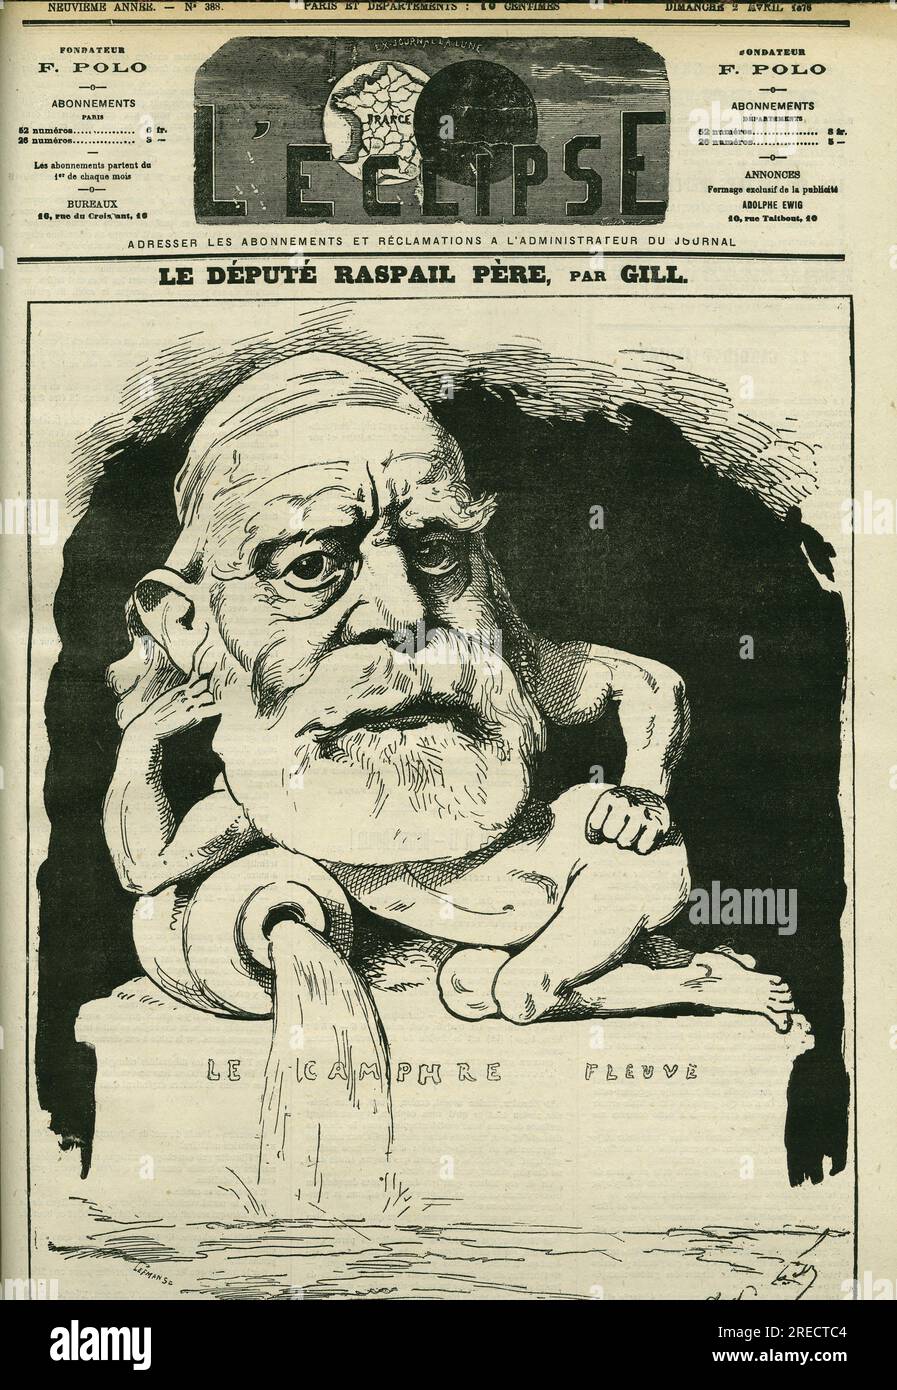 Portrait de Francois-Vincent Raspail (1794-1878), chimiste, medecin, et homme politique francais. Couverture in 'L'Eclipse' par Gill, le 2 avril 1876, Paris. Stock Photo